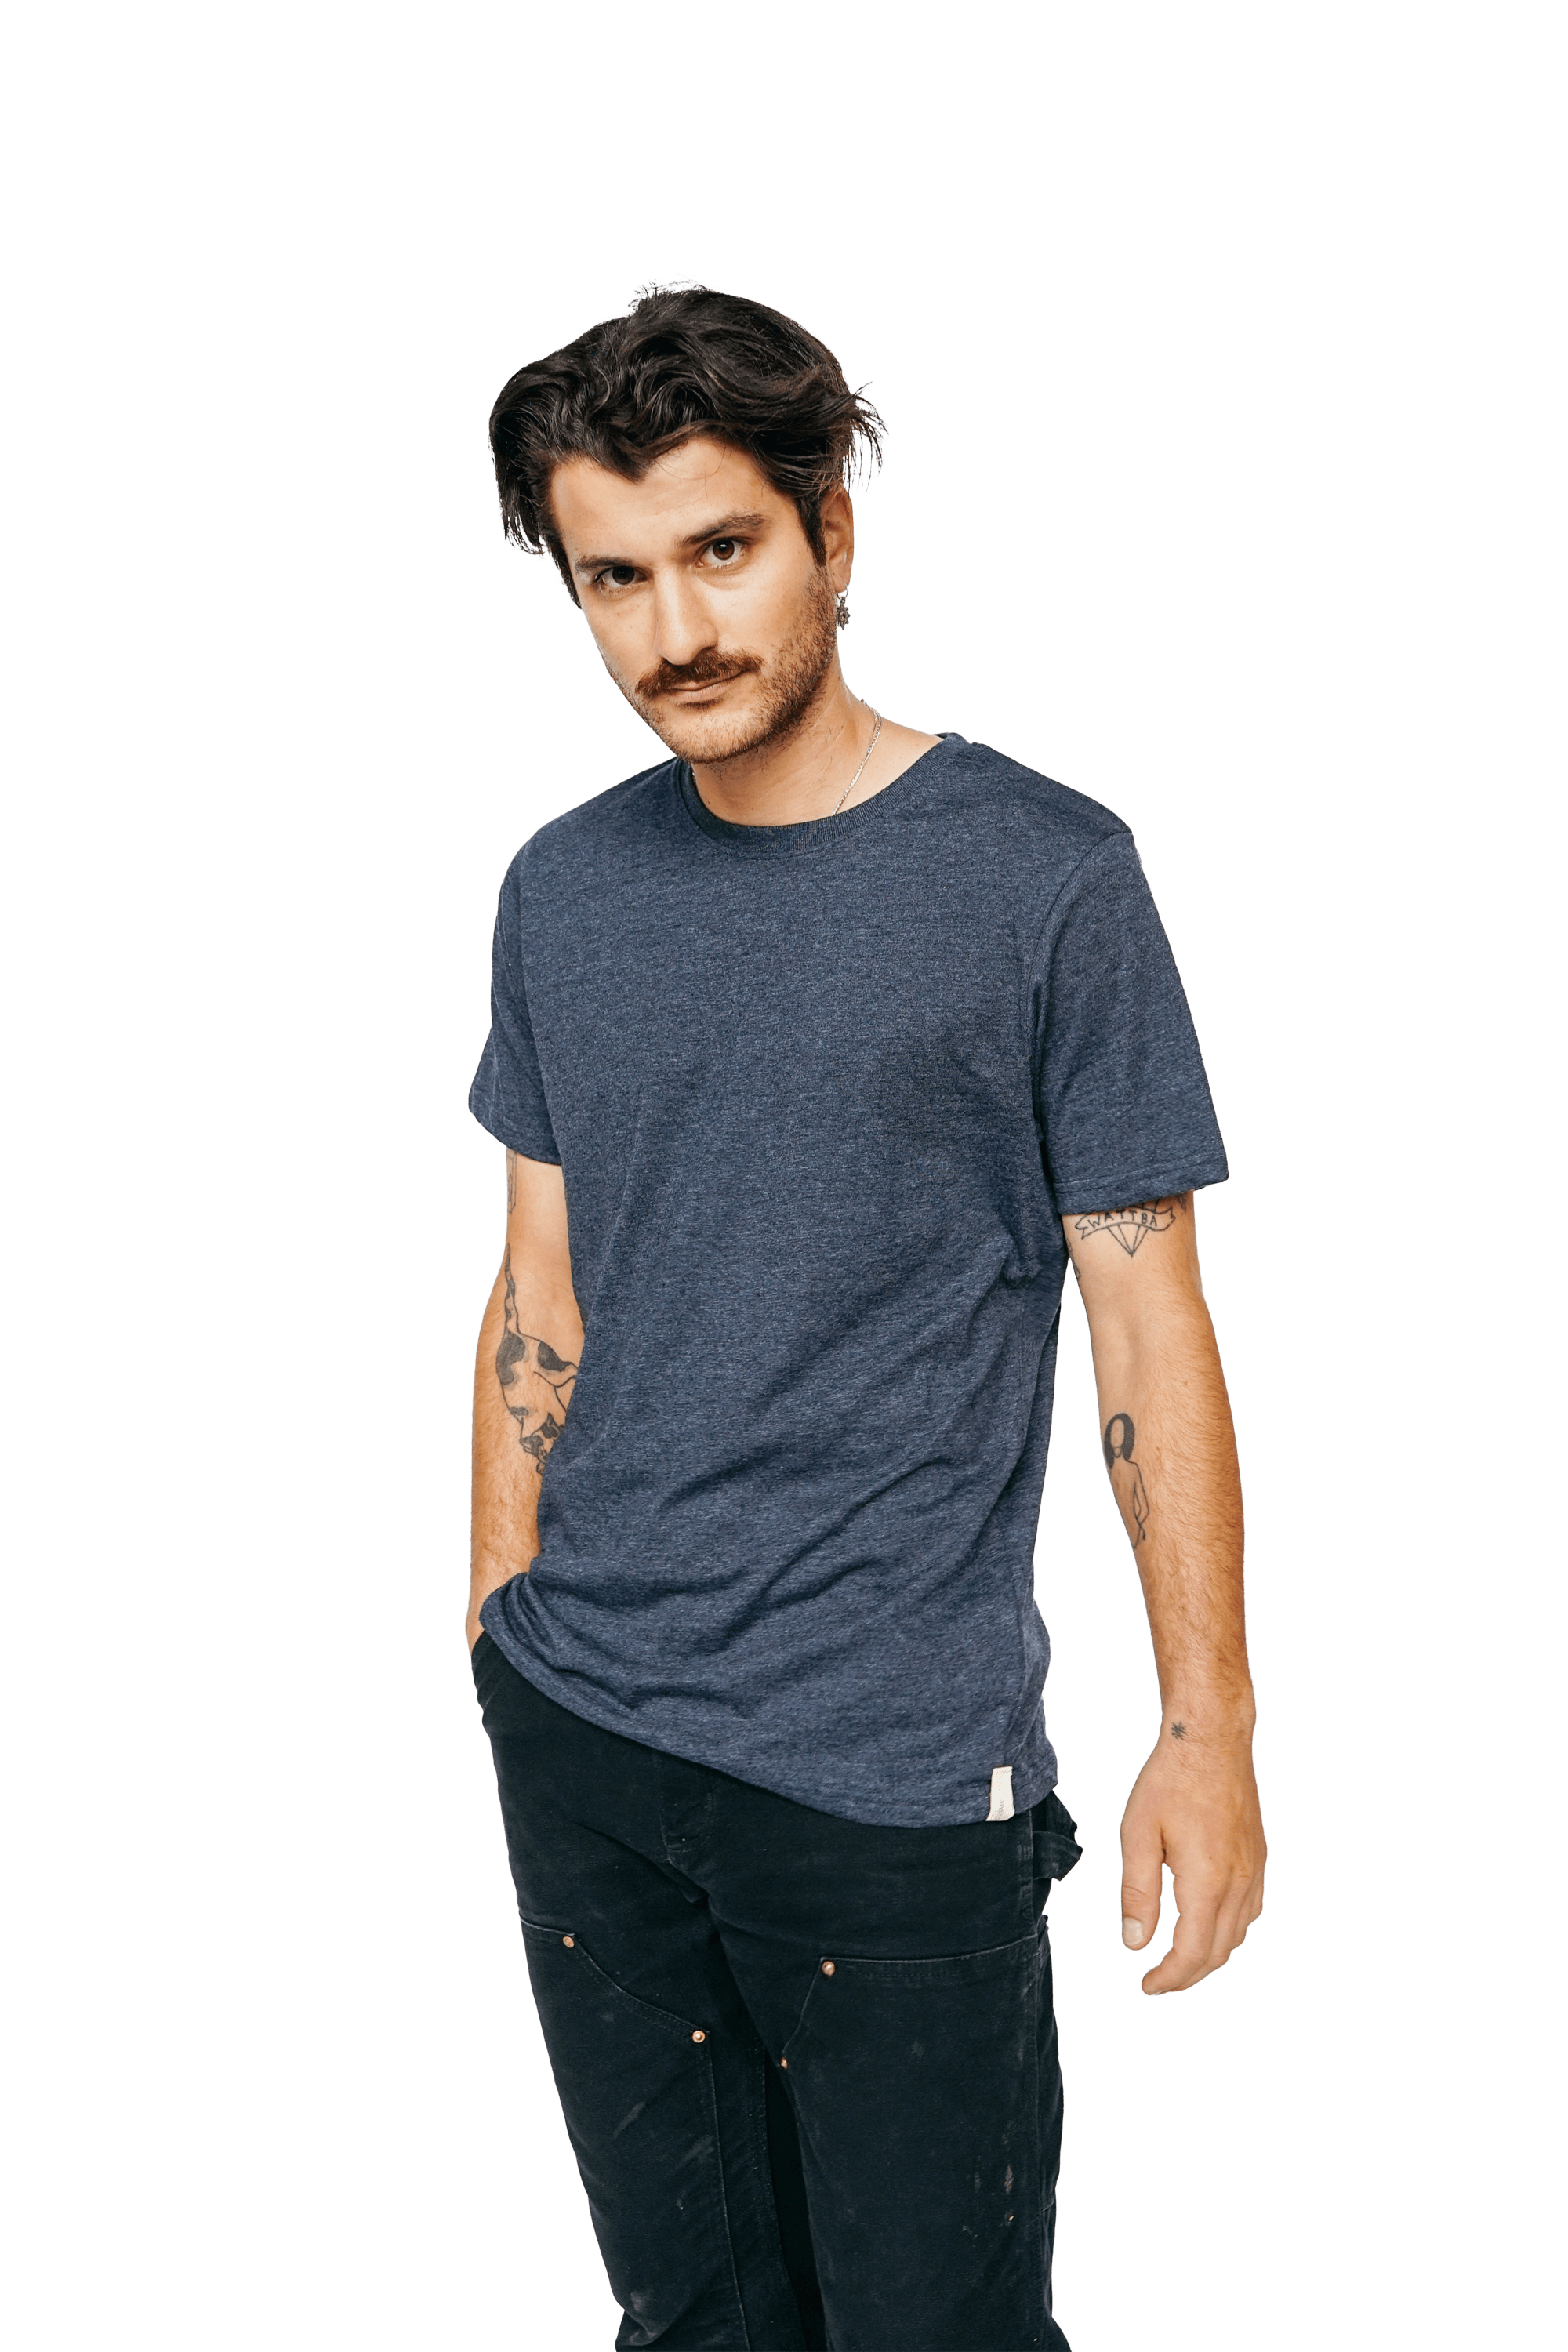 Man wearing XWASTED t-shirt